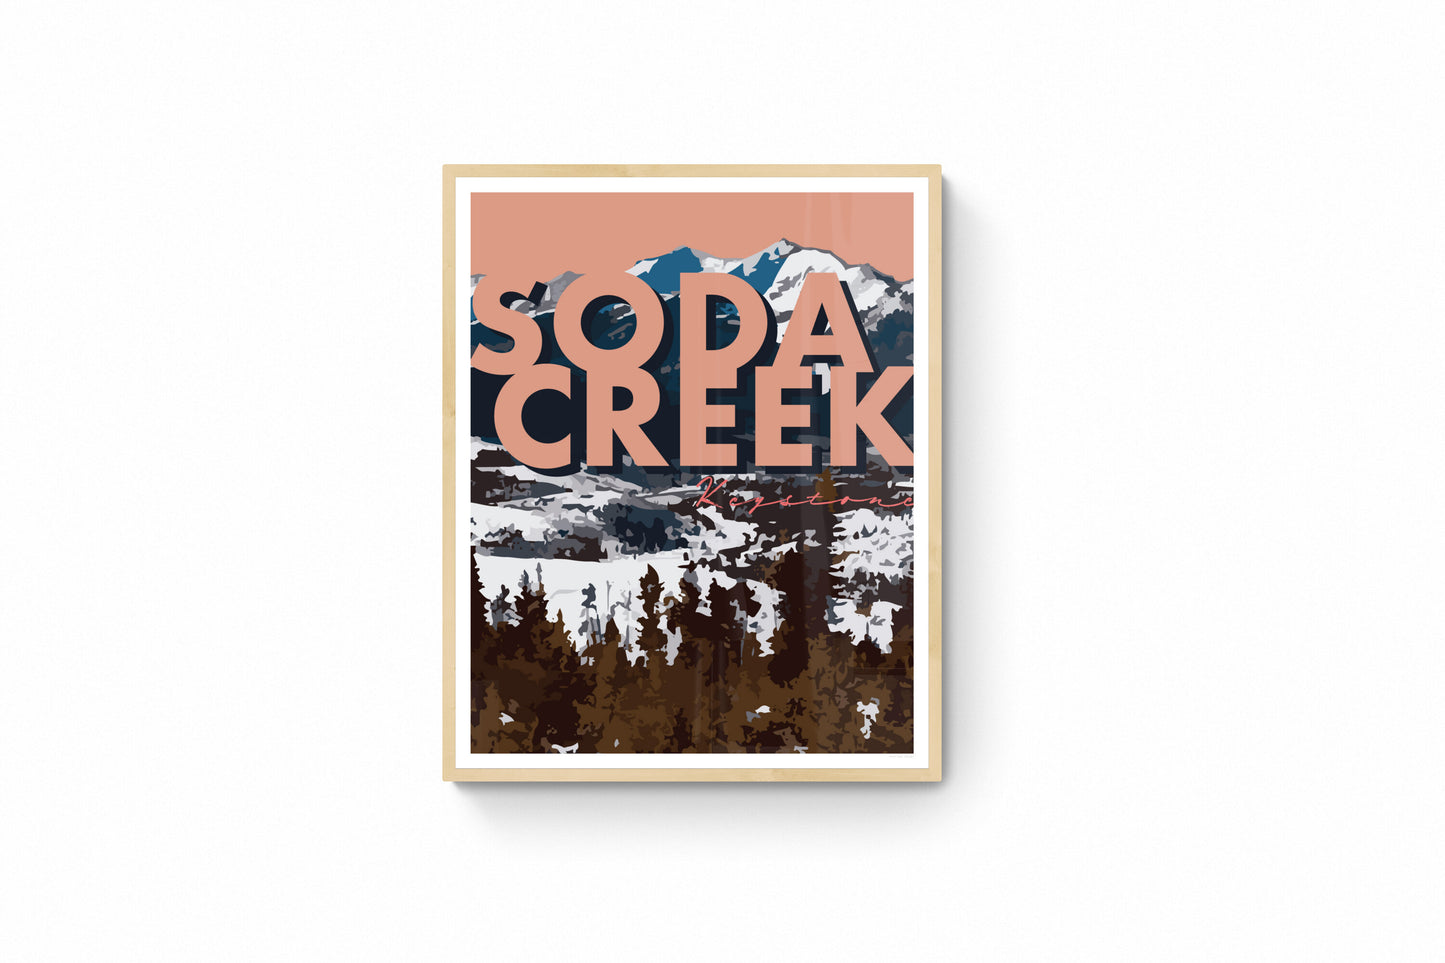 Keystone, Colorado - Soda Creek (Dusty Rose), Framed Wall Art w/ Large Text, 14x11